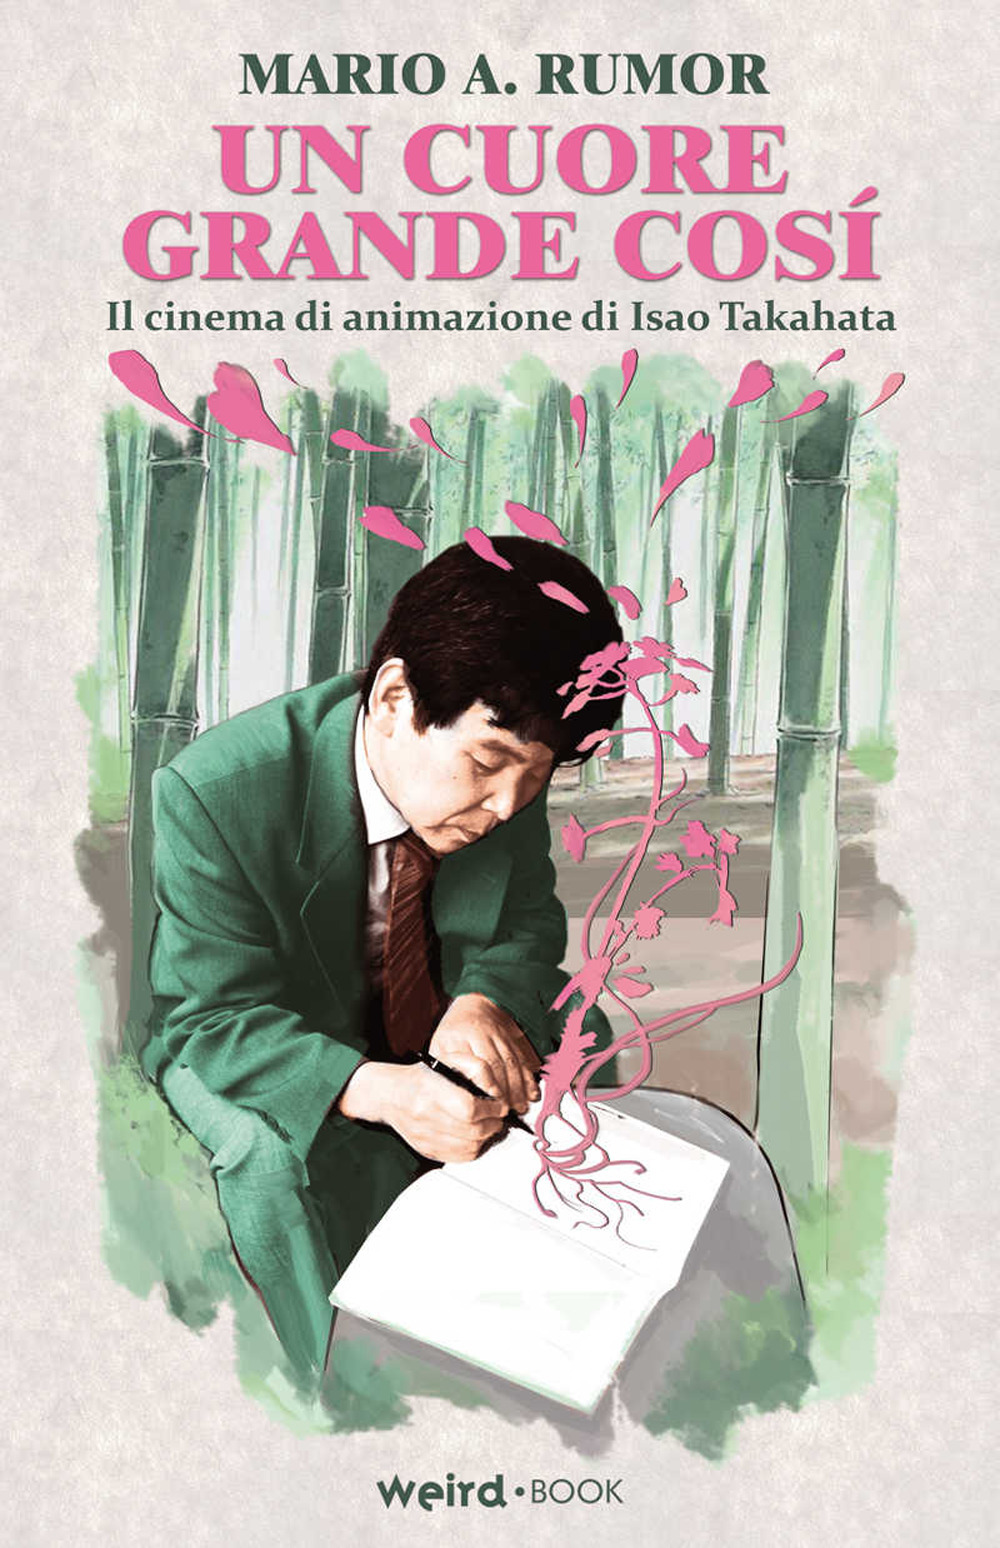 Libri Rumor Mario Angelo - Un Cuore Grande Cosi. Il Cinema Di Animazione Di Isao Takahata NUOVO SIGILLATO SUBITO DISPONIBILE